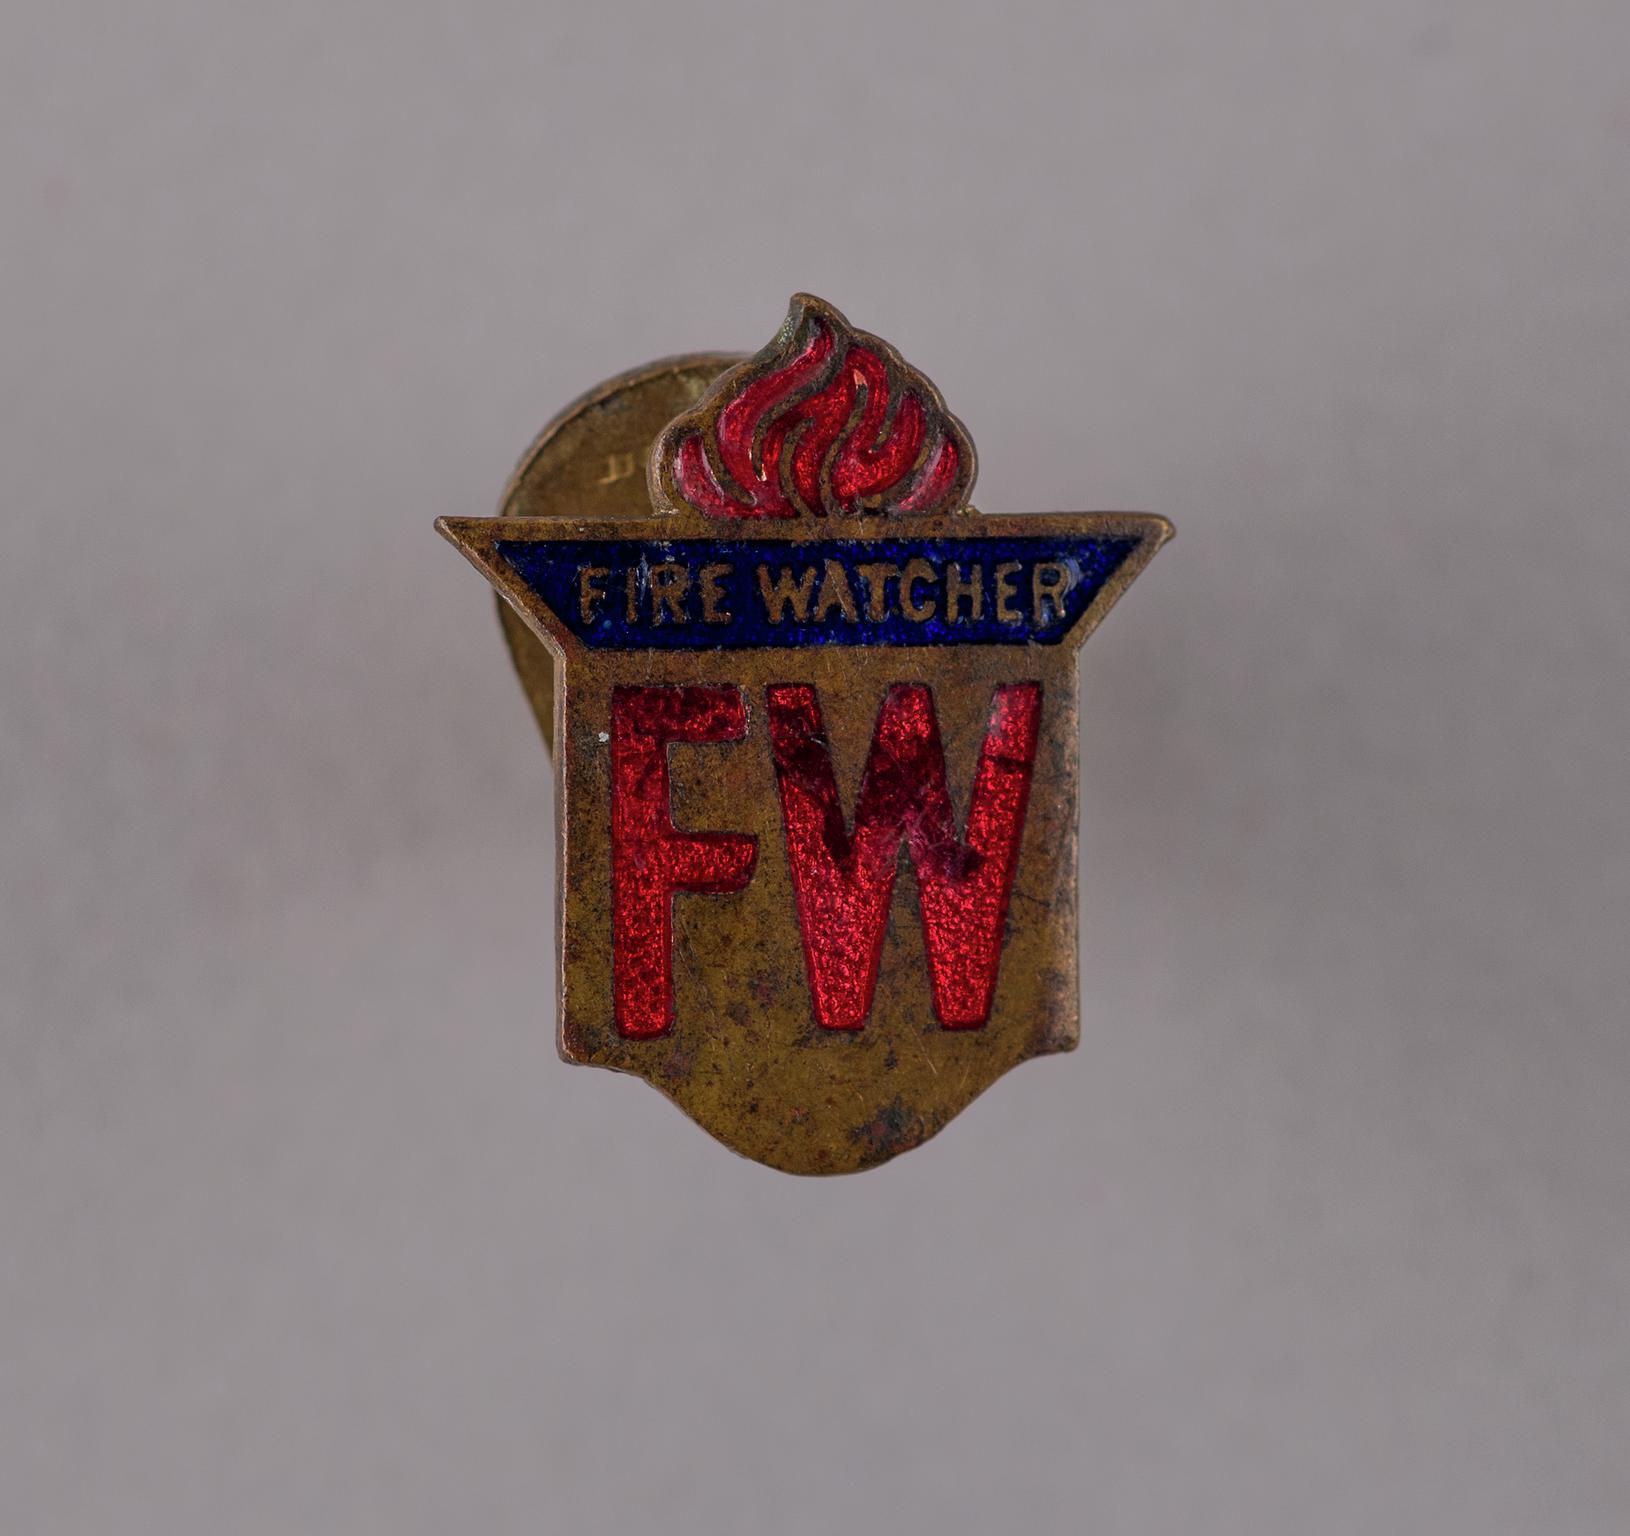 Fire watcher's badge